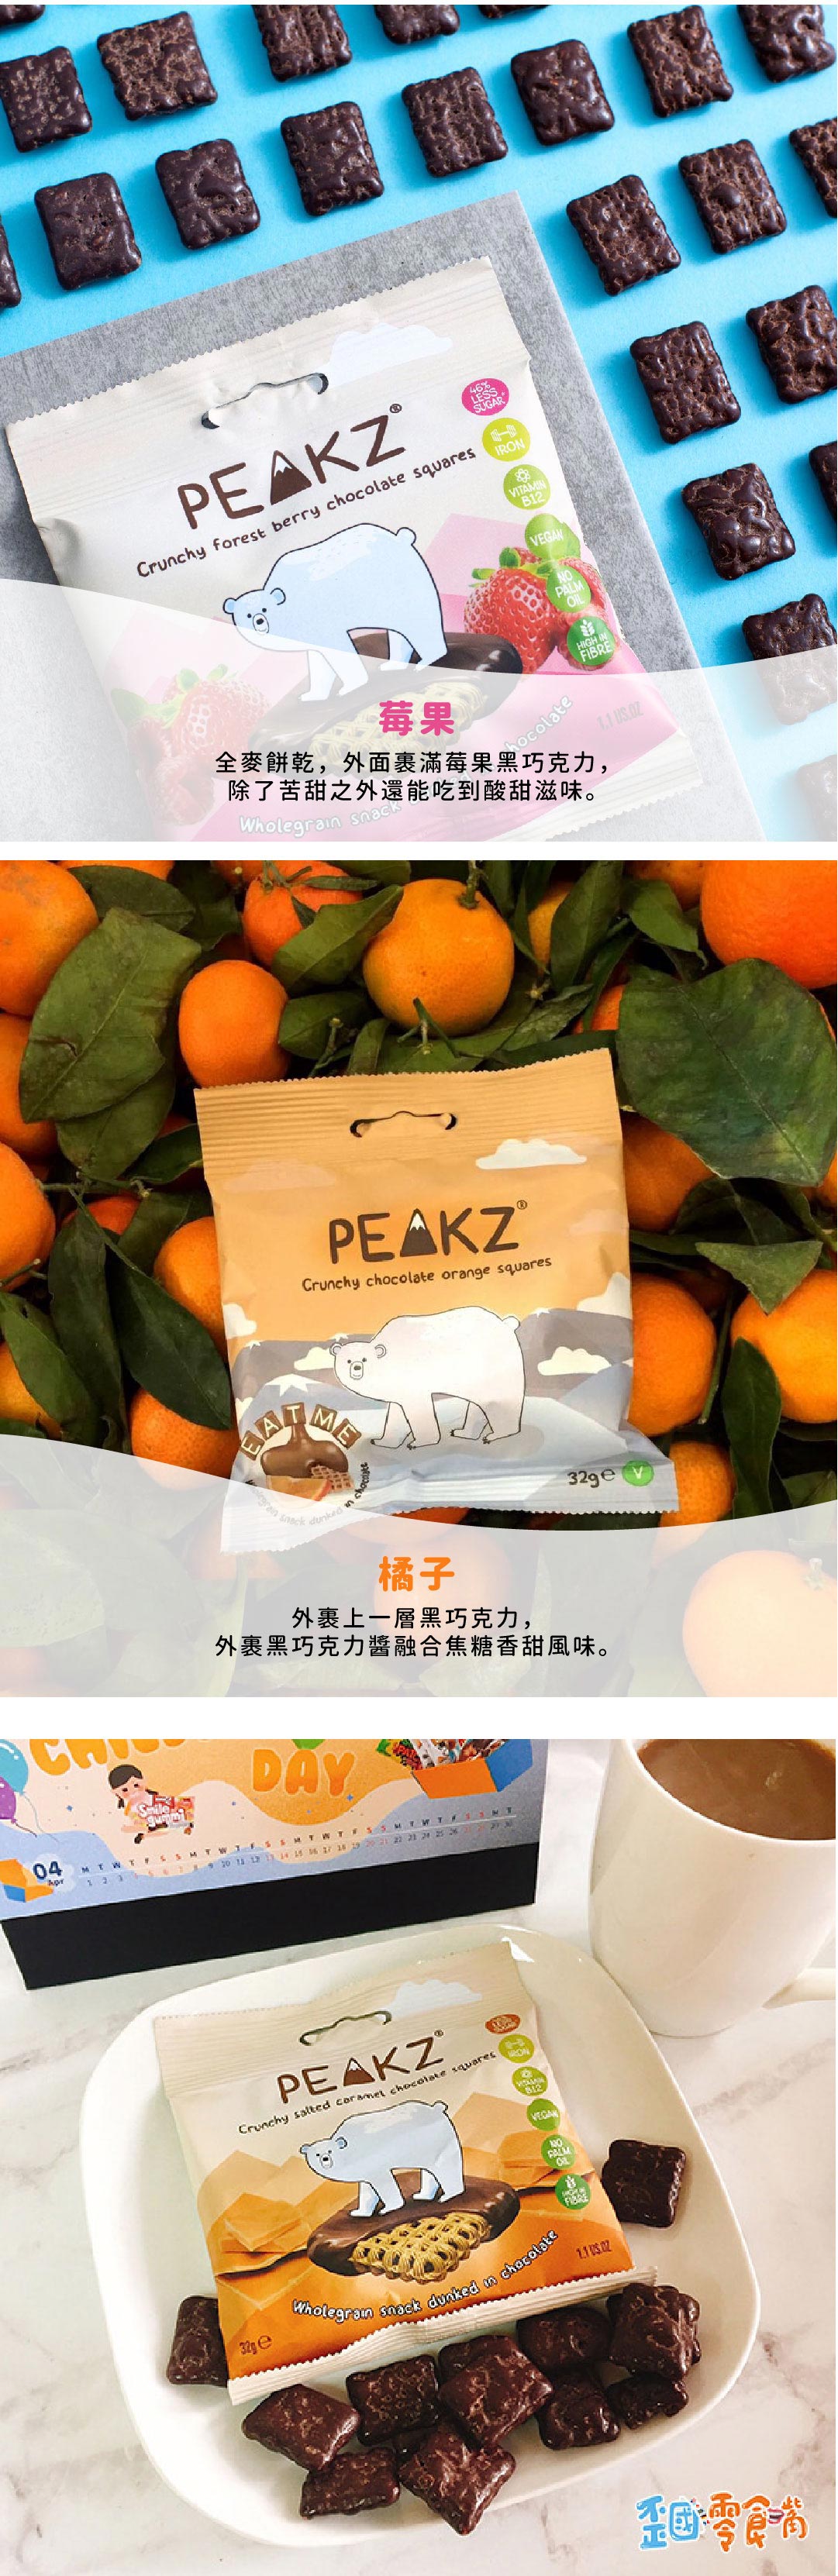 【英國】Peakz 巧克力淋醬全麥餅乾32g-原味/橘子/焦糖海鹽/莓果